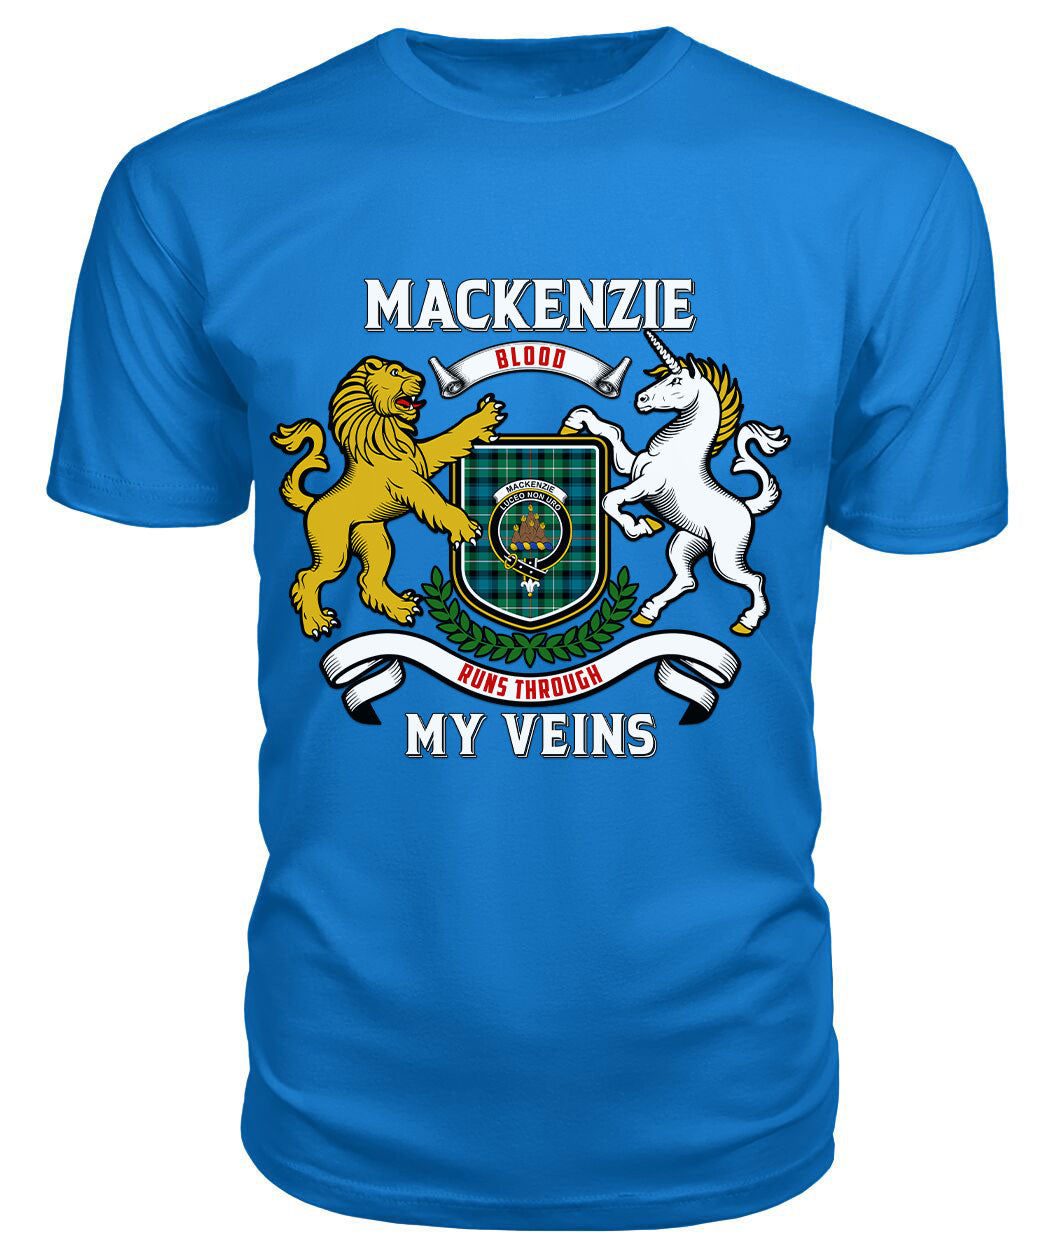 MacKenzie Ancient Tartan Crest 2D T-shirt - Blood Runs Through My Veins Style